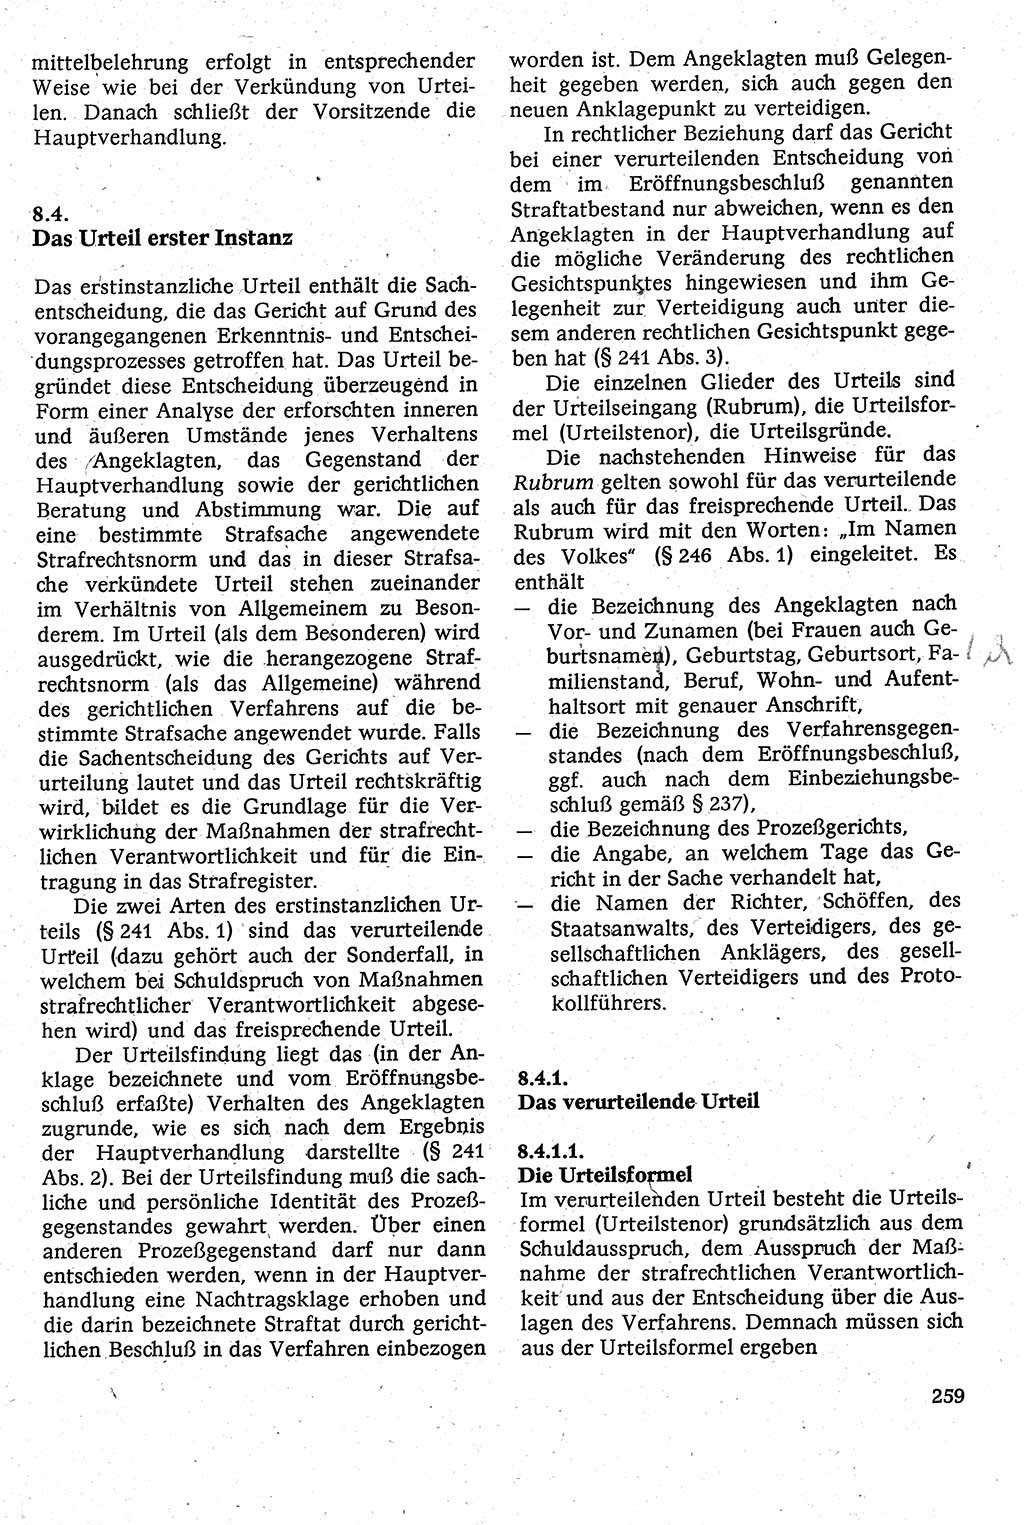 Strafverfahrensrecht [Deutsche Demokratische Republik (DDR)], Lehrbuch 1982, Seite 259 (Strafverf.-R. DDR Lb. 1982, S. 259)